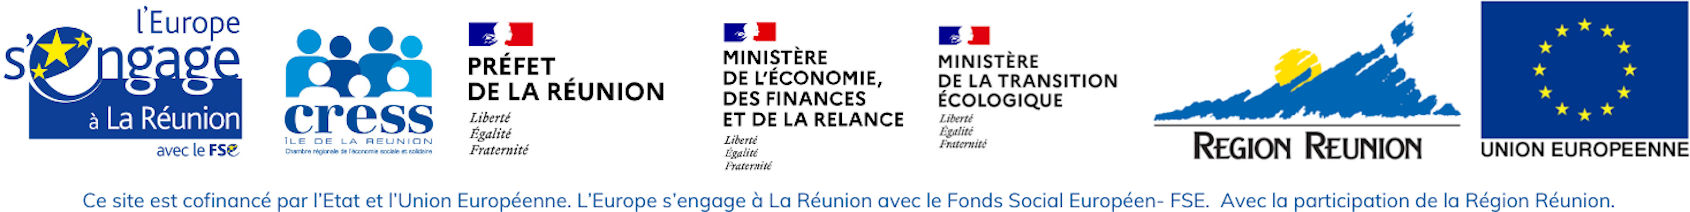 Logo des financeurs - L'Europe s'engage avec le FSE | CRESS de La Réunion | Etat | Ministère de l'Economie, des Finances, et de la Relance | Ministère de la Transition Ecologique | Région Réunion | FEDER